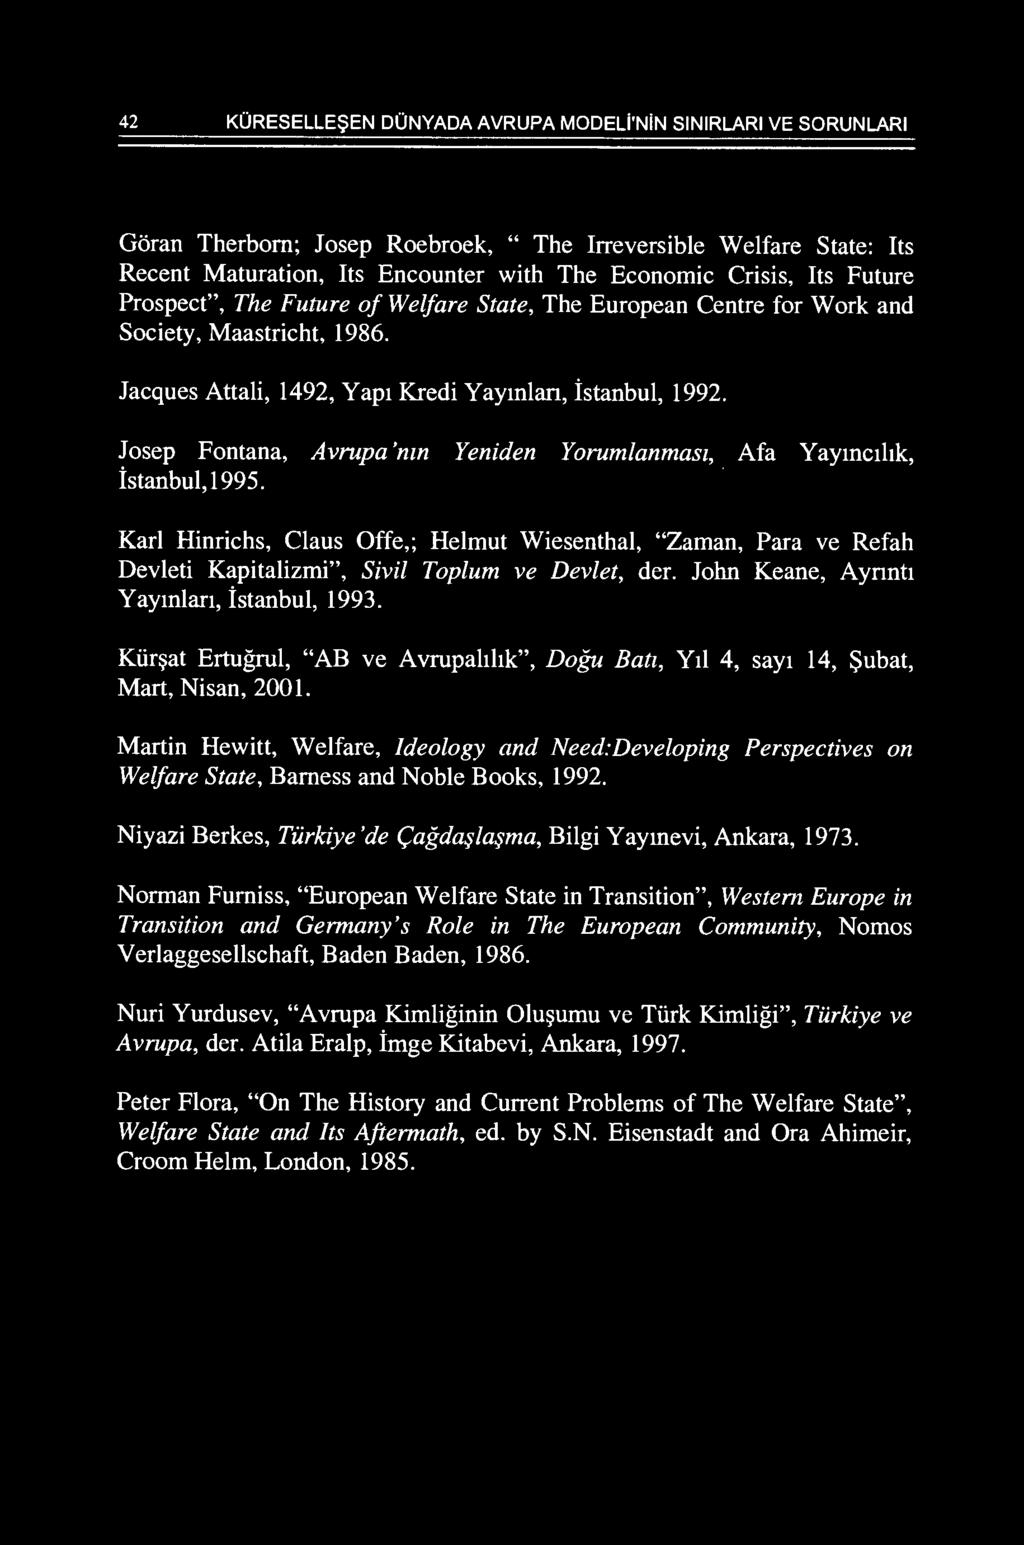 Josep Fontana, Avrupa 'mn Yeniden Yorumlanmast, Afa Yaymcthk, istanbul, 1995. Karl Hinrichs, Claus Offe,; Helmut Wiesenthal, "Zaman, Para ve Refah Devleti Kapitalizmi", Sivil Toplum ve Devlet, der.